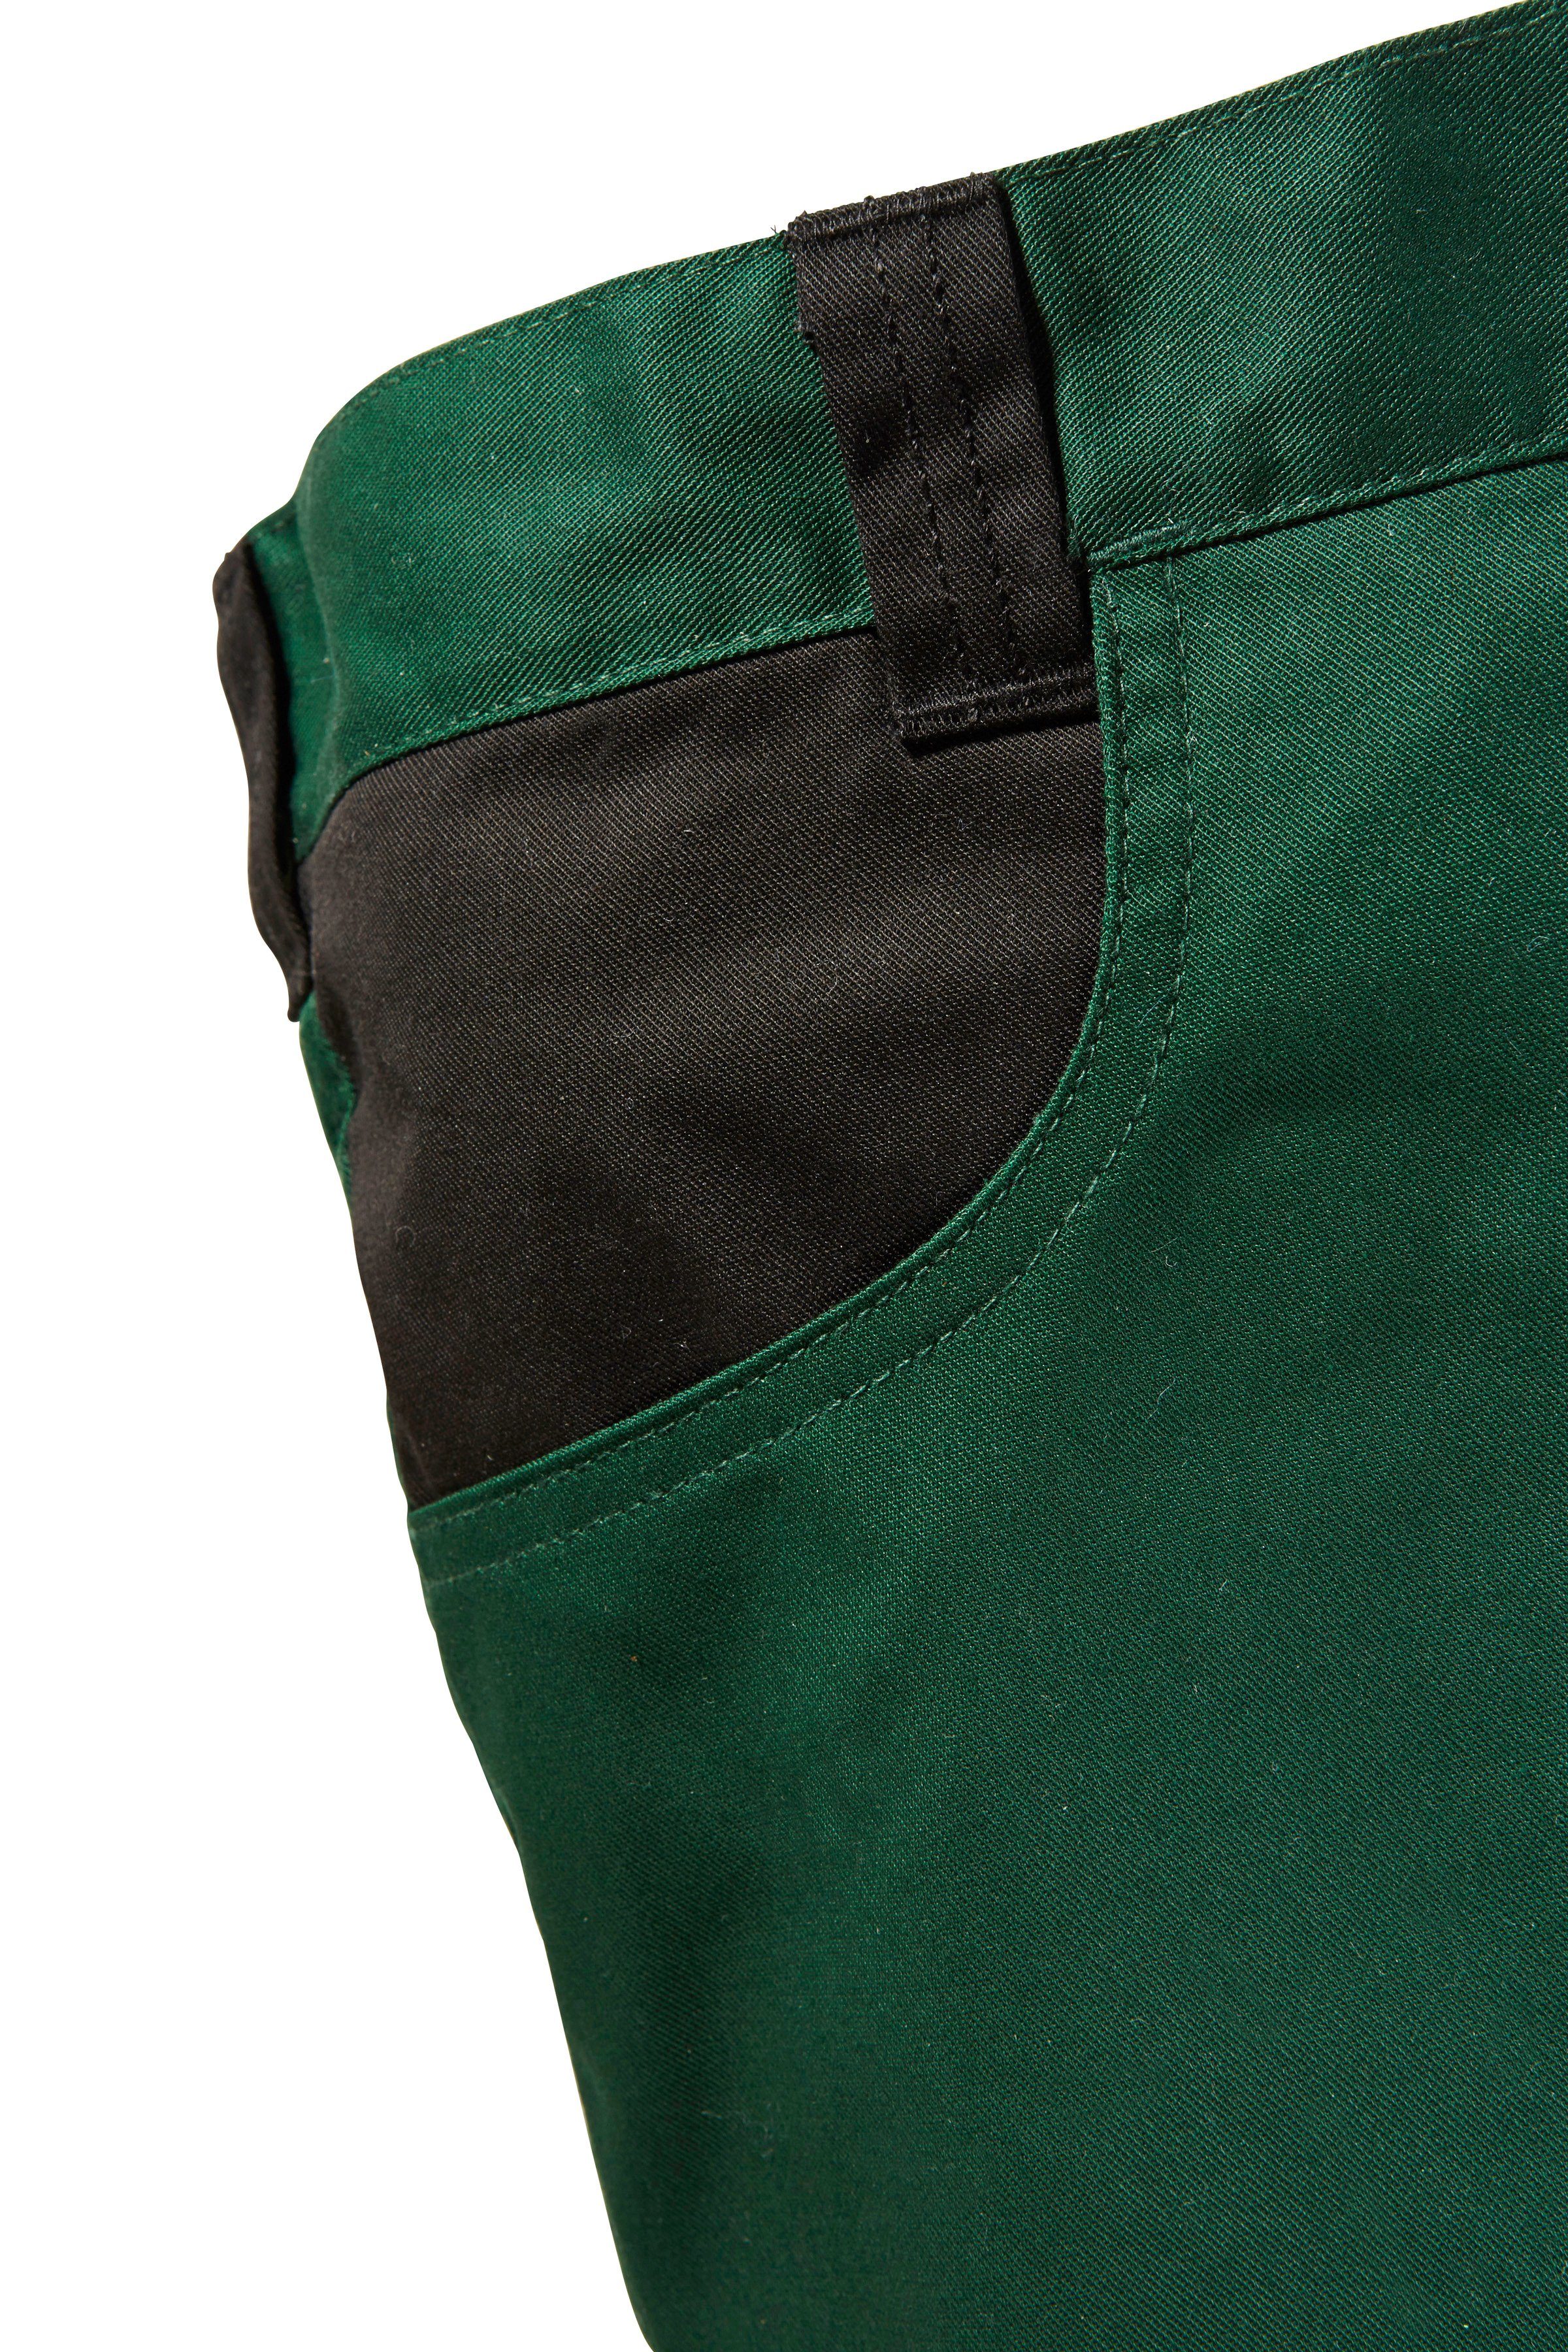 Arbeitshose Knieverstärkung mit Pull grün-schwarz safety& more